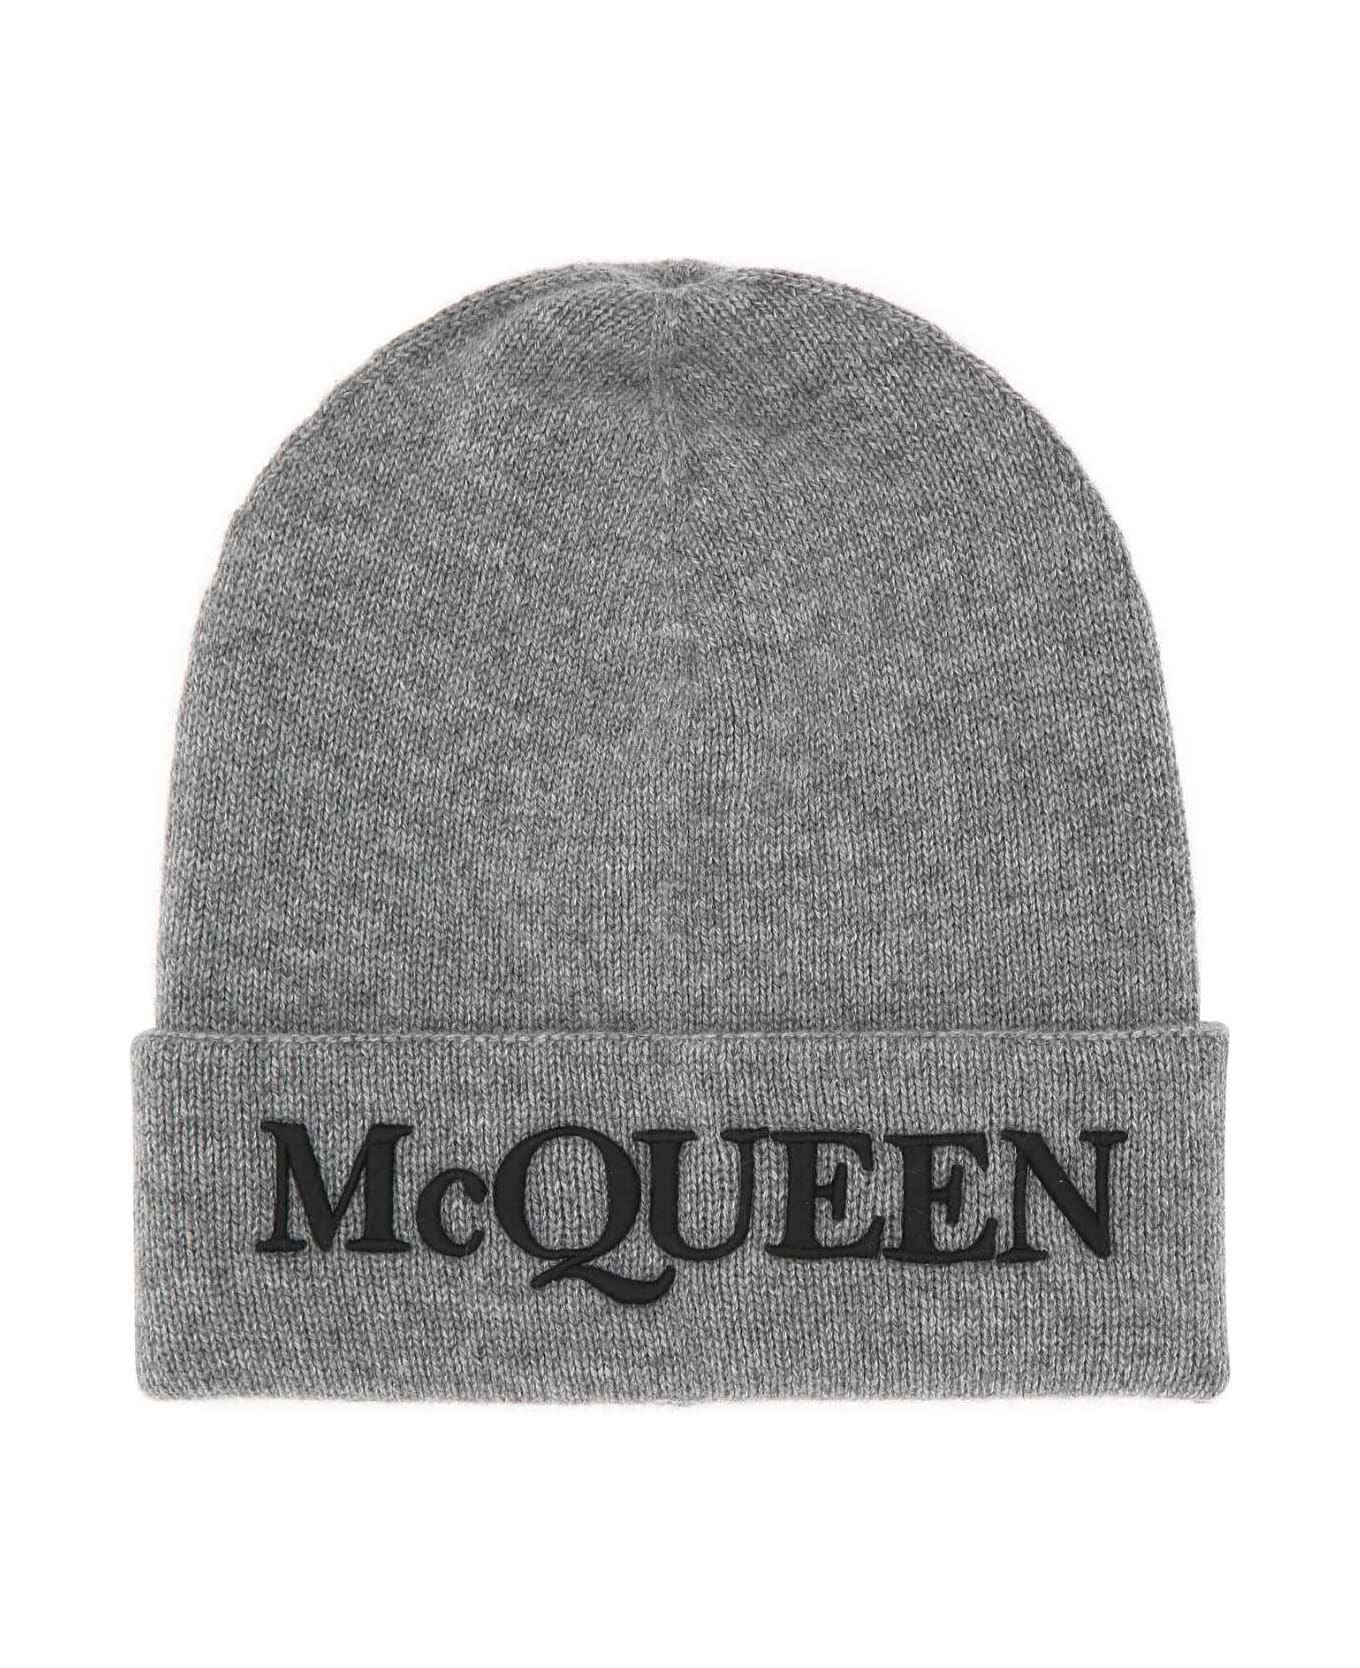 Alexander McQueen Grey Cashmere Beanie Hat - 1460 デジタルアクセサリー